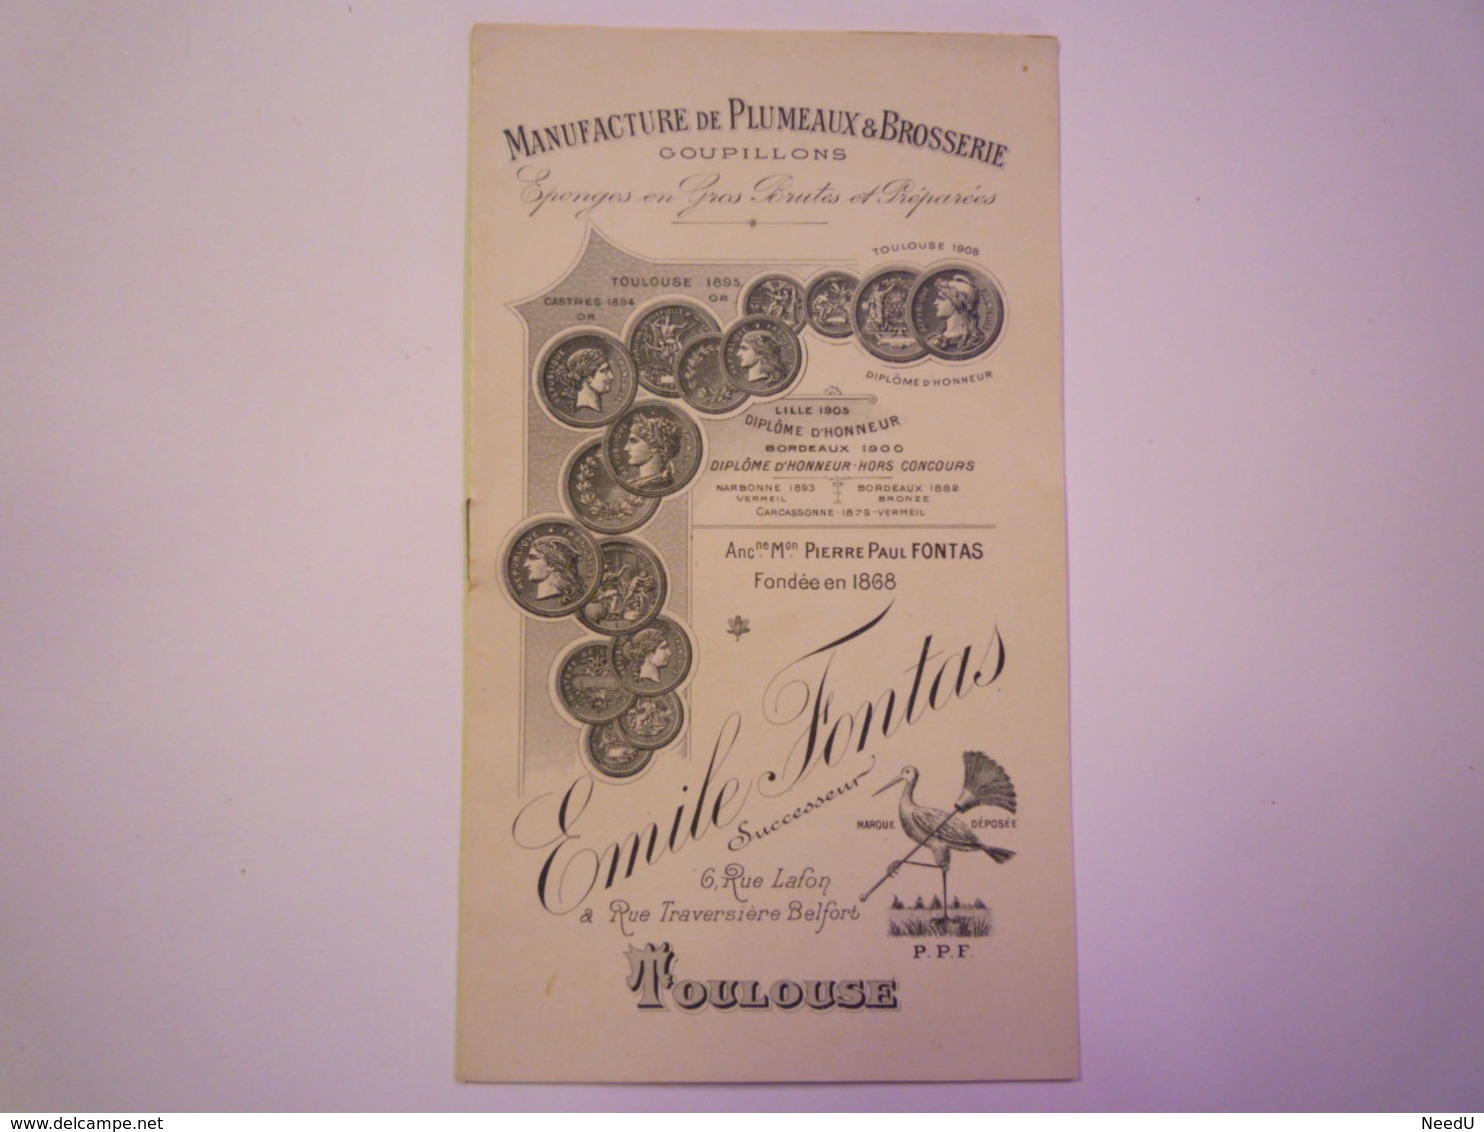 GP 2019 - 1038  Brochure PUB  Manufacture De Plumeaux & Brosserie Emile FONTAS Toulouse 1909   XXXX - Publicidad